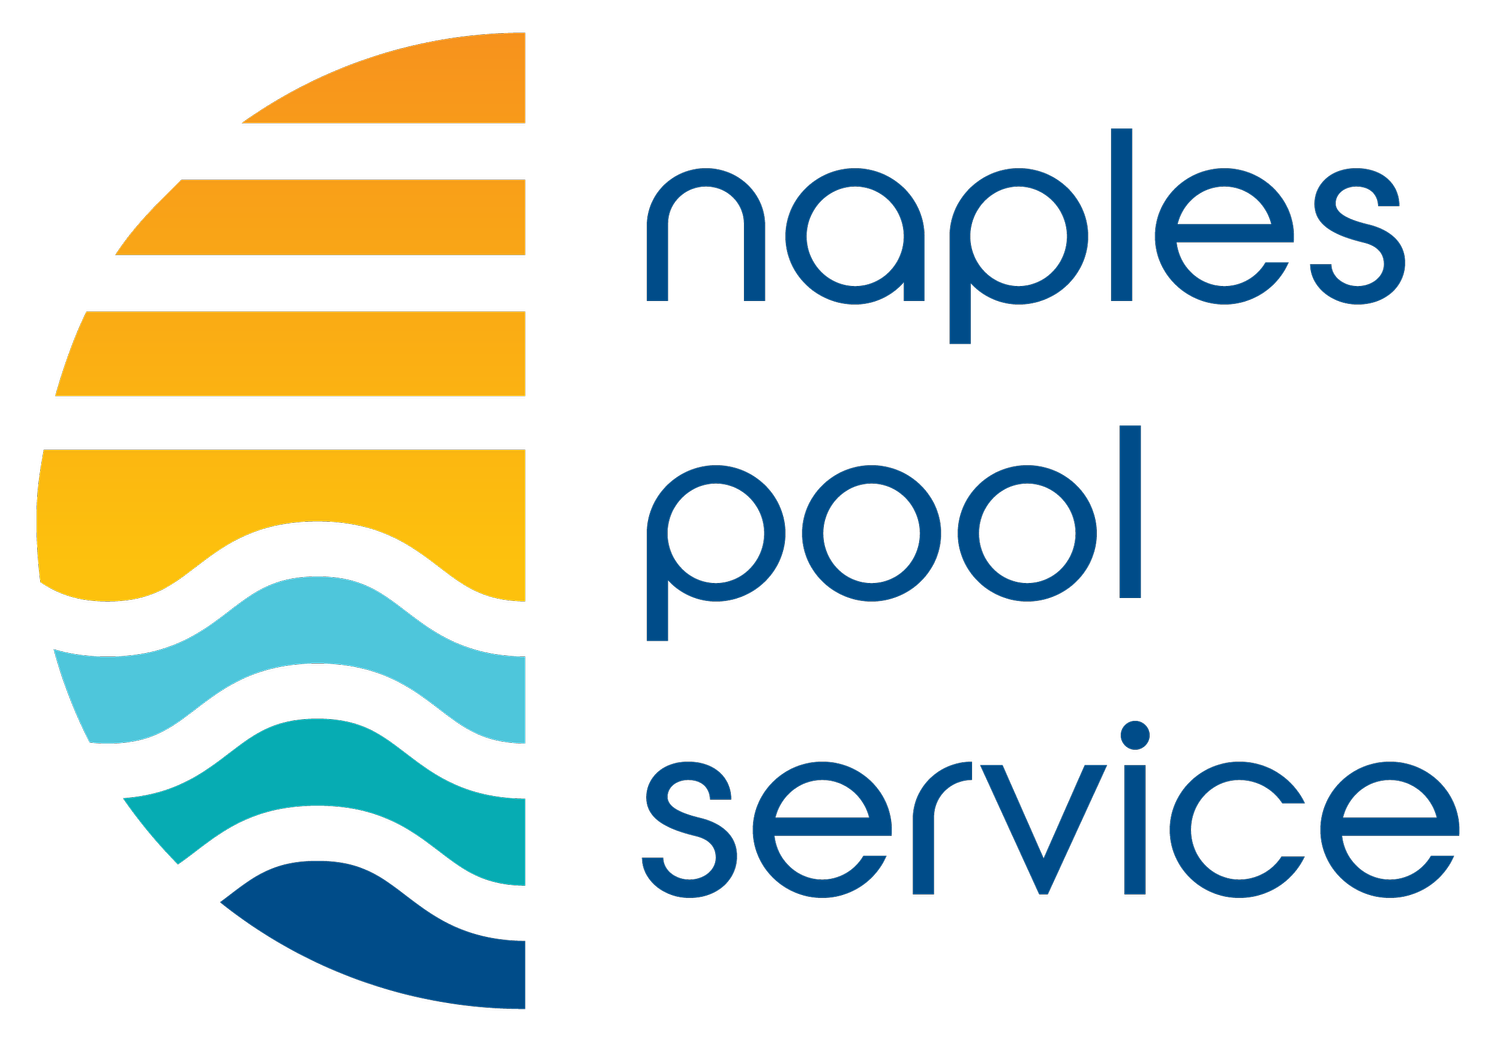 Naples Pool Service